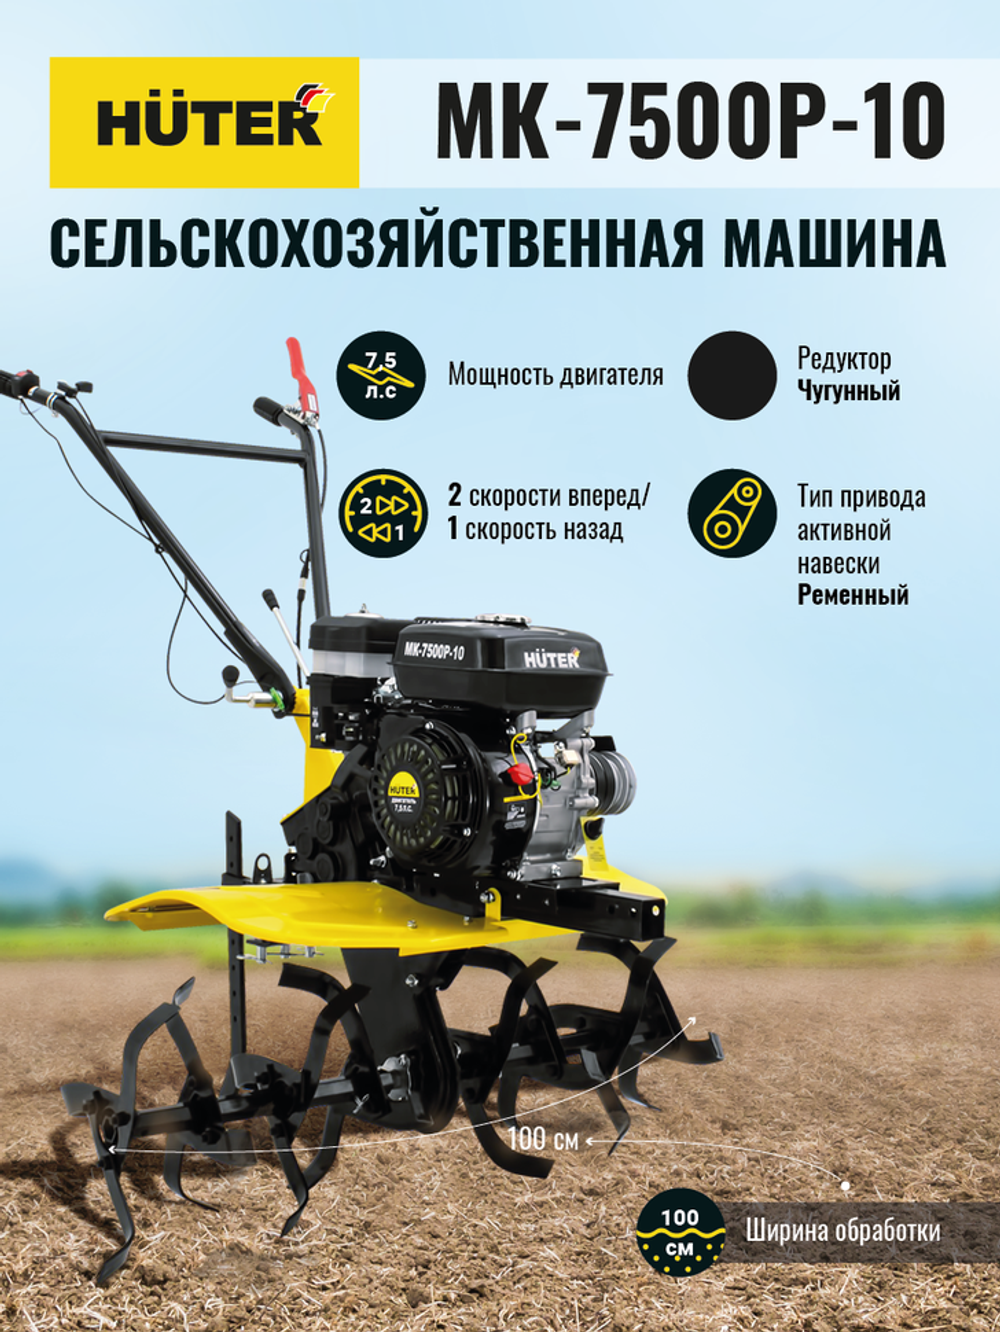 Сельскохозяйственная машина HUTER MK-7500P-10